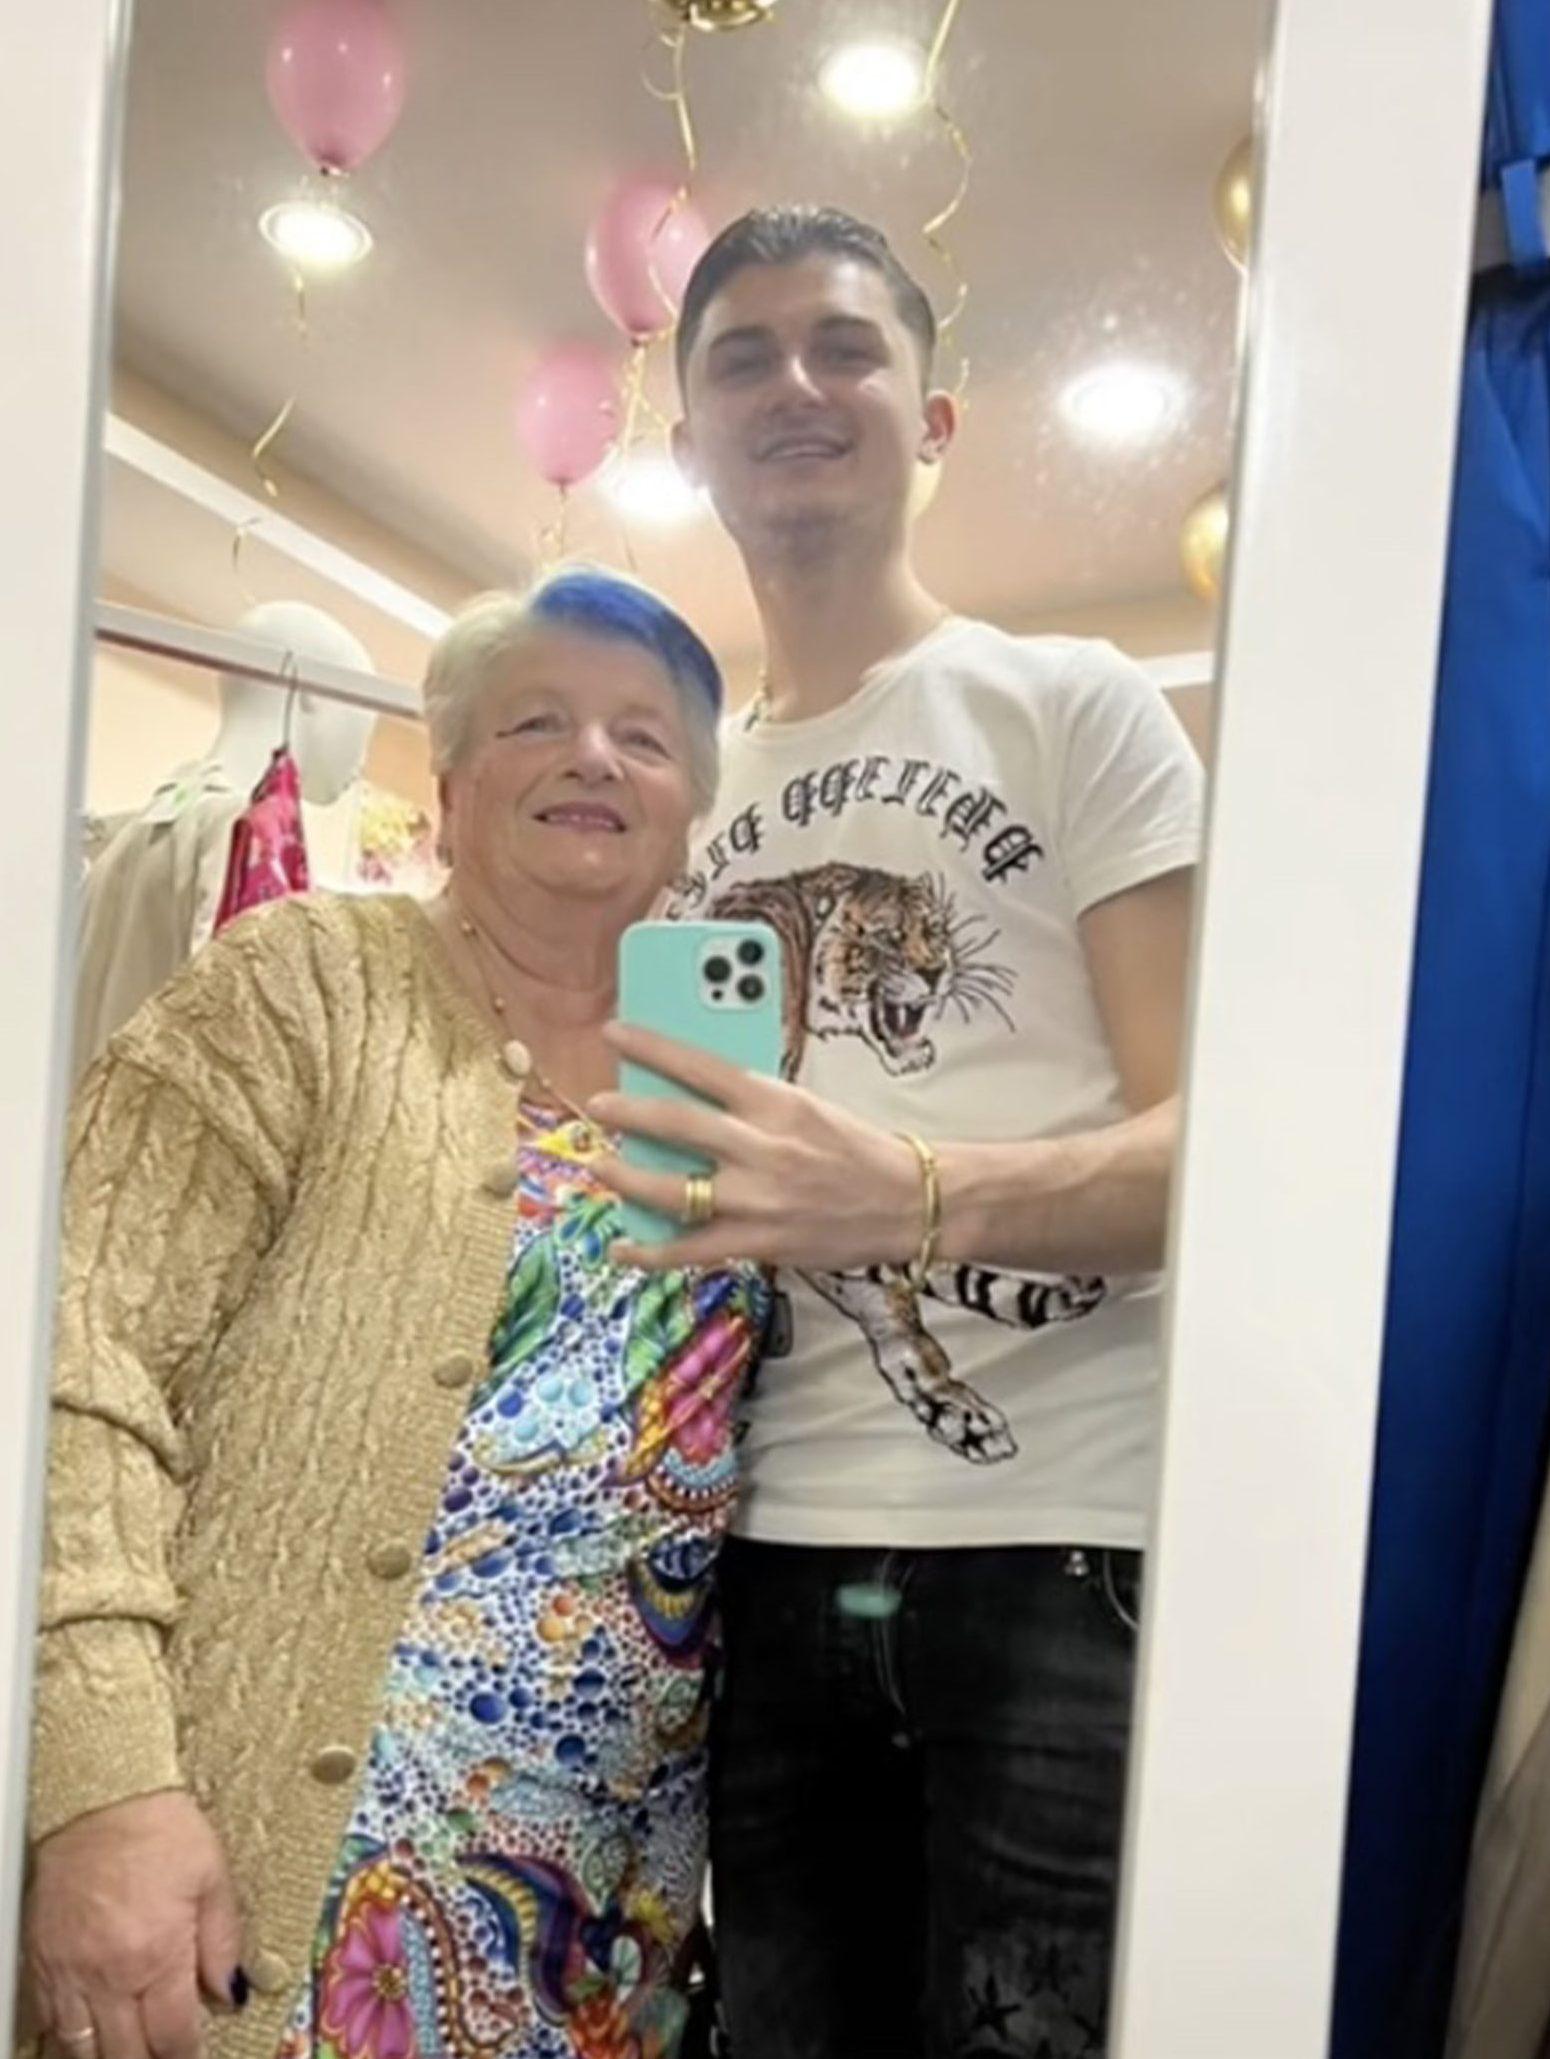 DAnna 19 compartilhou uma srie de fotos mostrando-se abraado com sua namorada de 76 anos